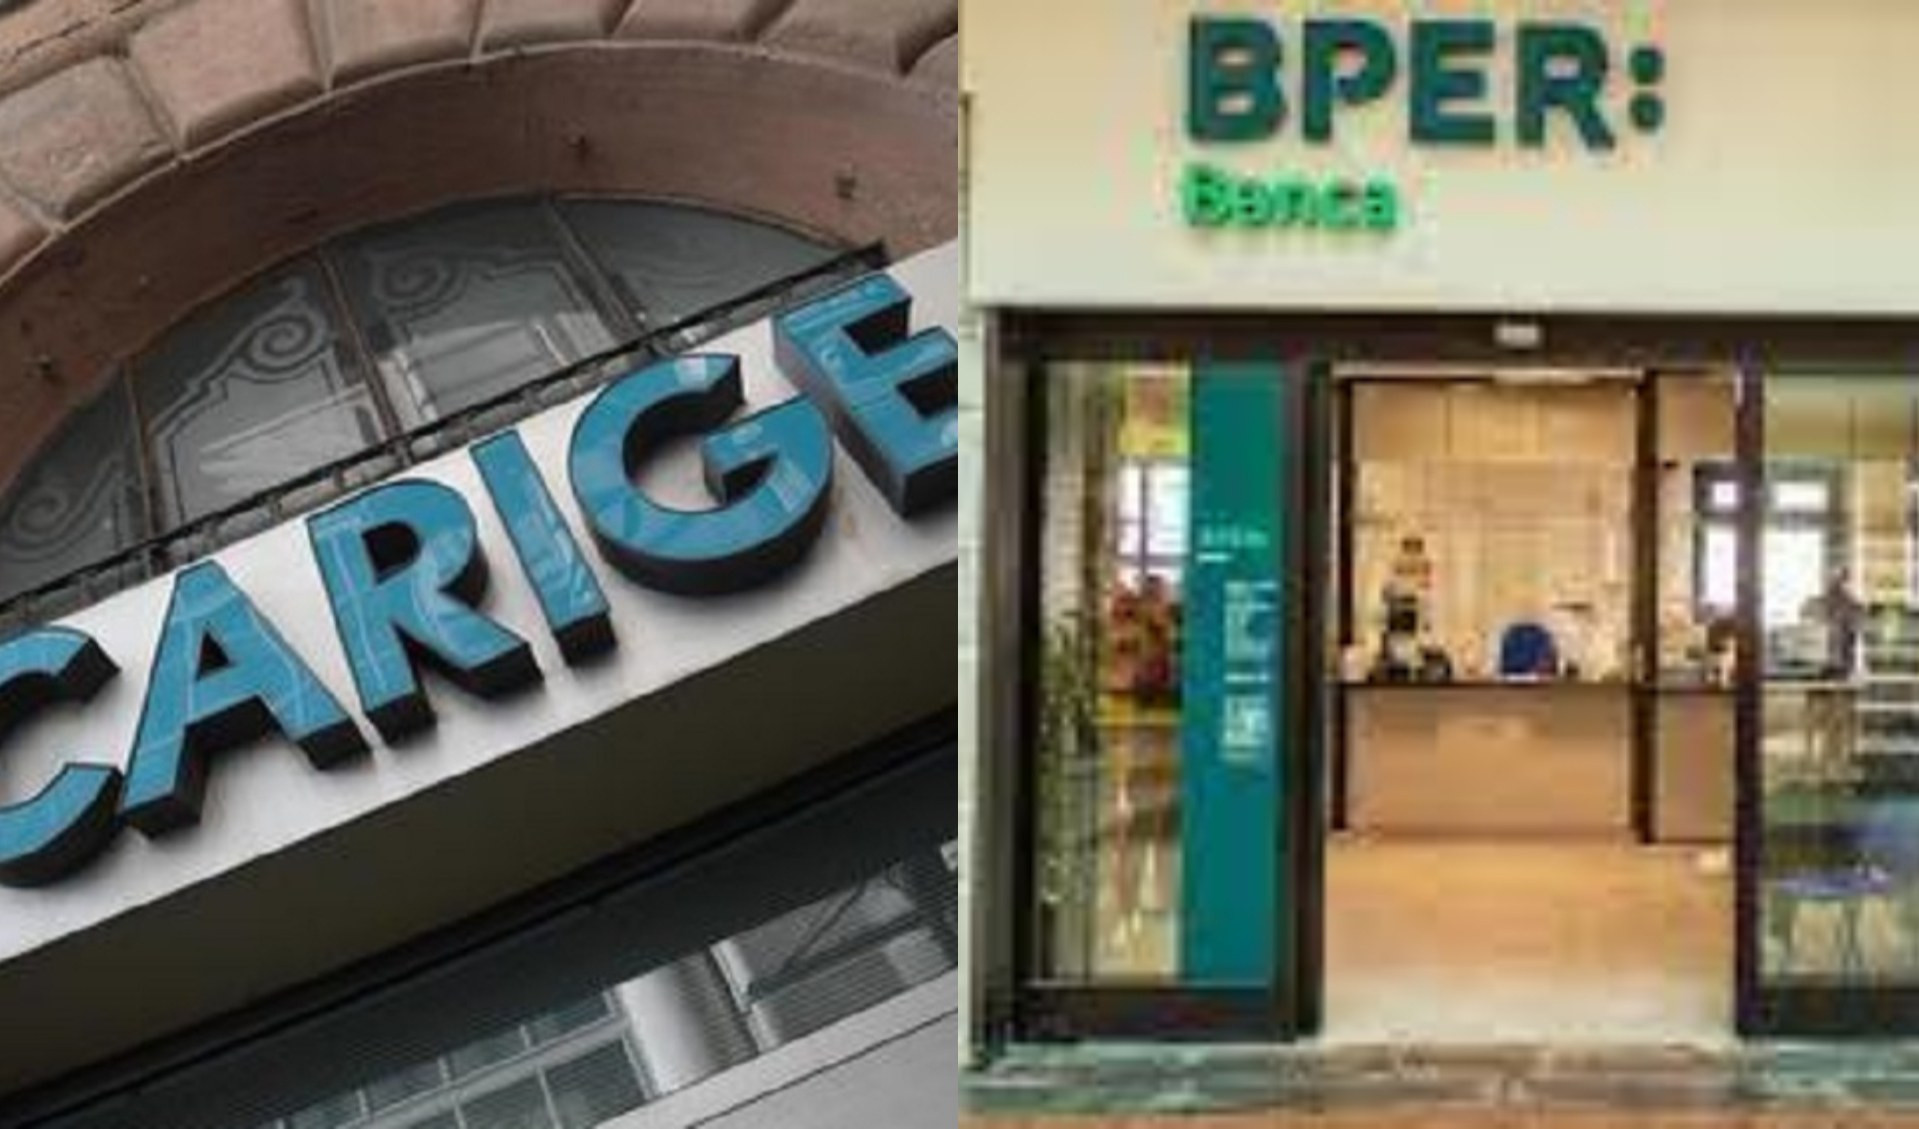 Bper approva la fusione con Banca Carige con il 99,99% dei voti